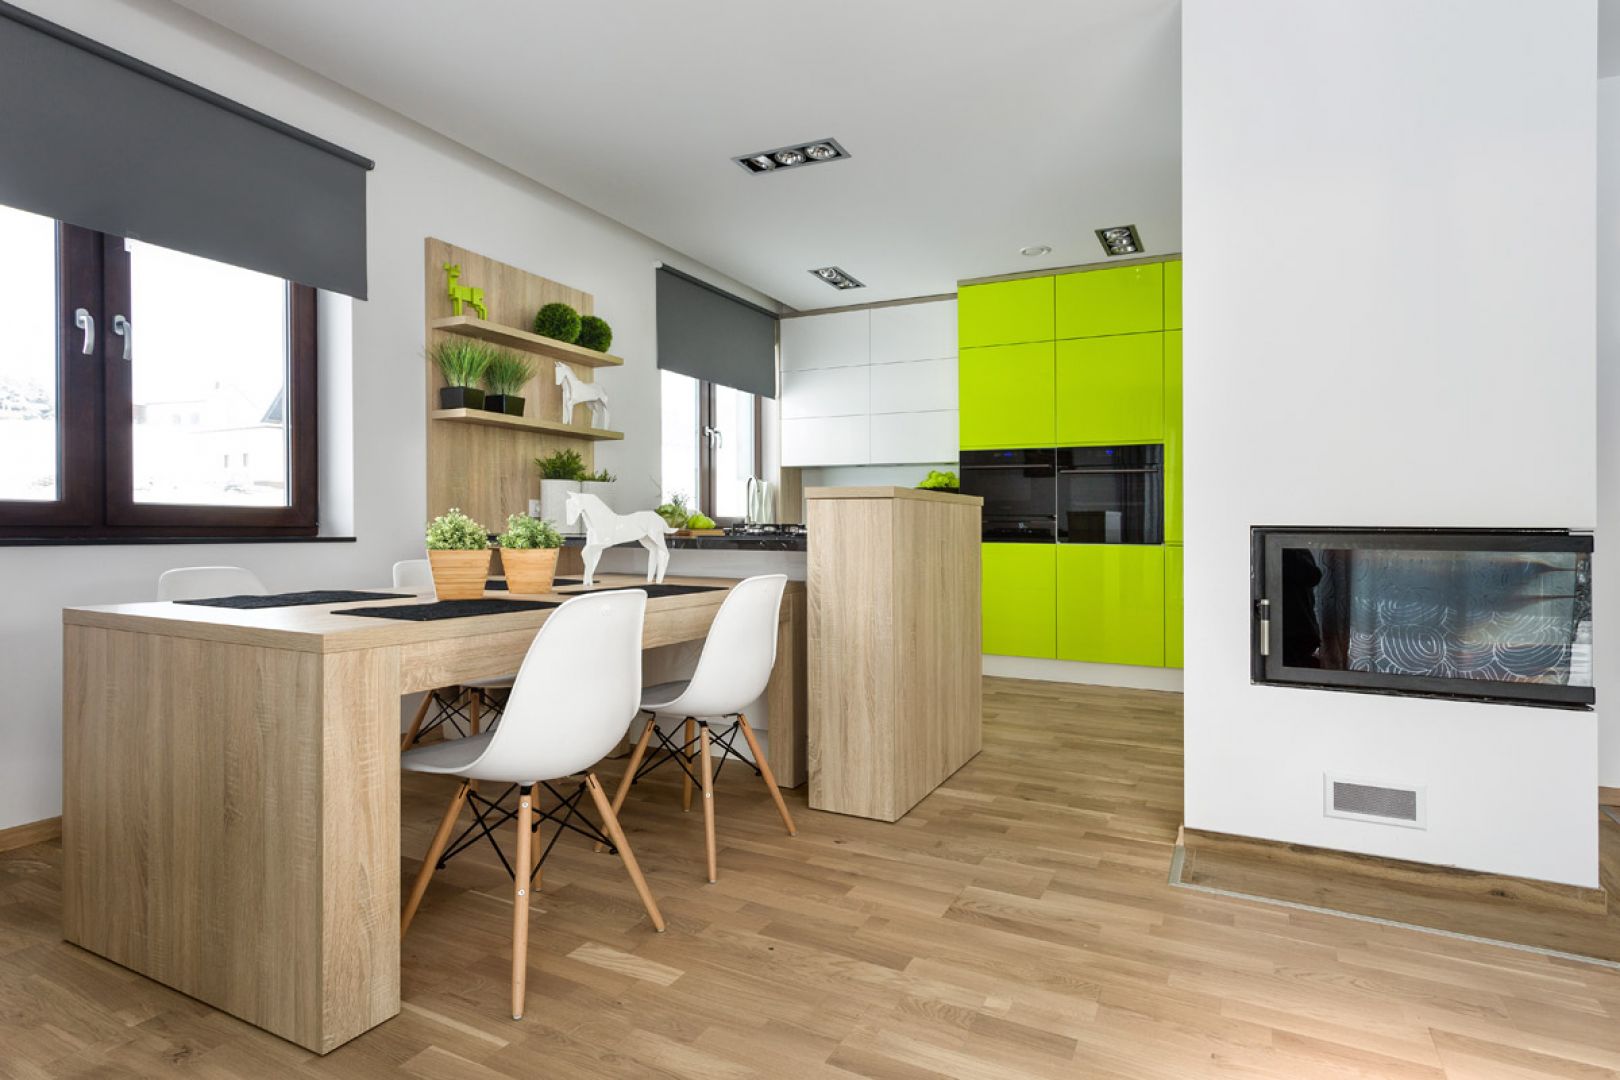 Kuchnia w biało-zielonej aranżacji. Otwarte półki z jasnego drewna świetnie ocieplają wnętrze. Fot. Vigo/Max Kuchnie